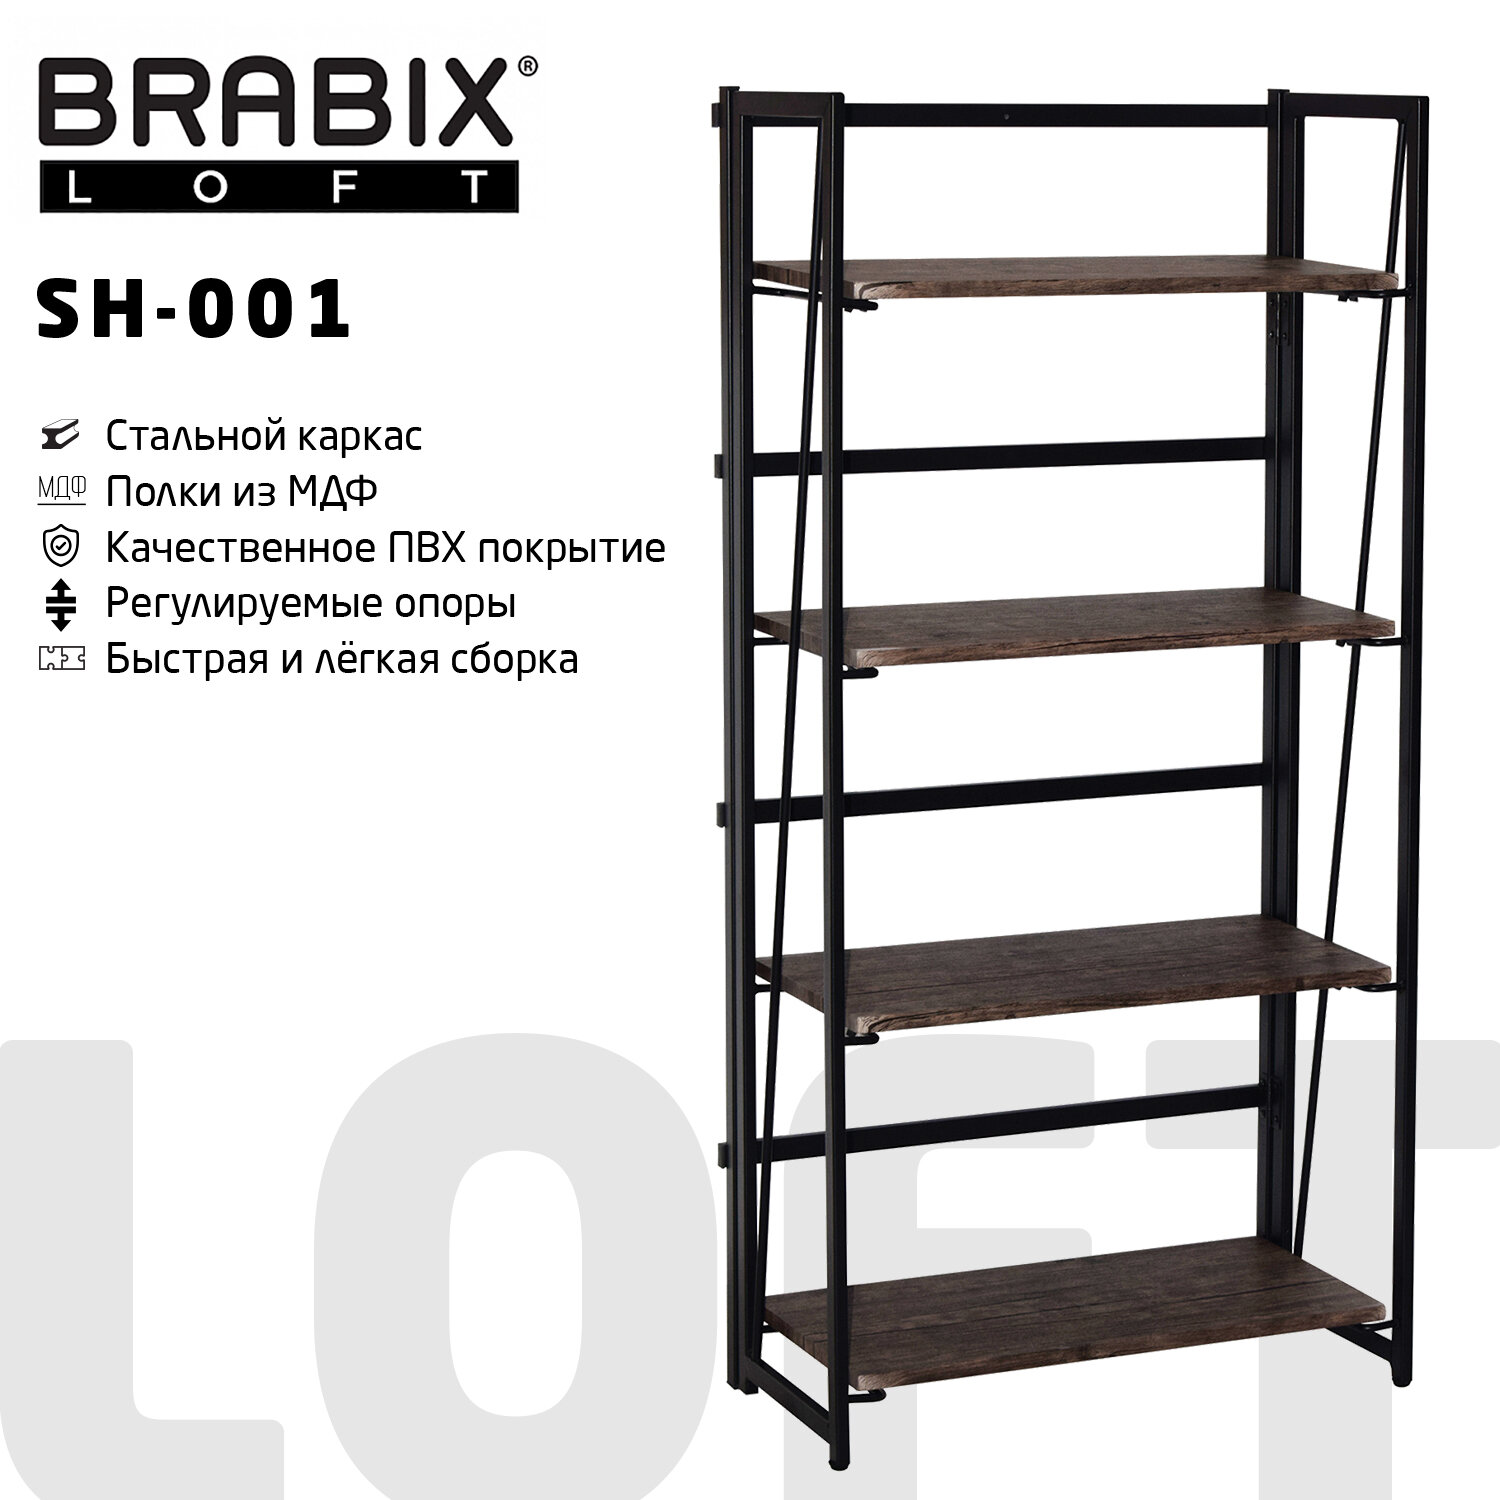    BRABIX LOFT SH-001, 6003001250 , ,   , 641228